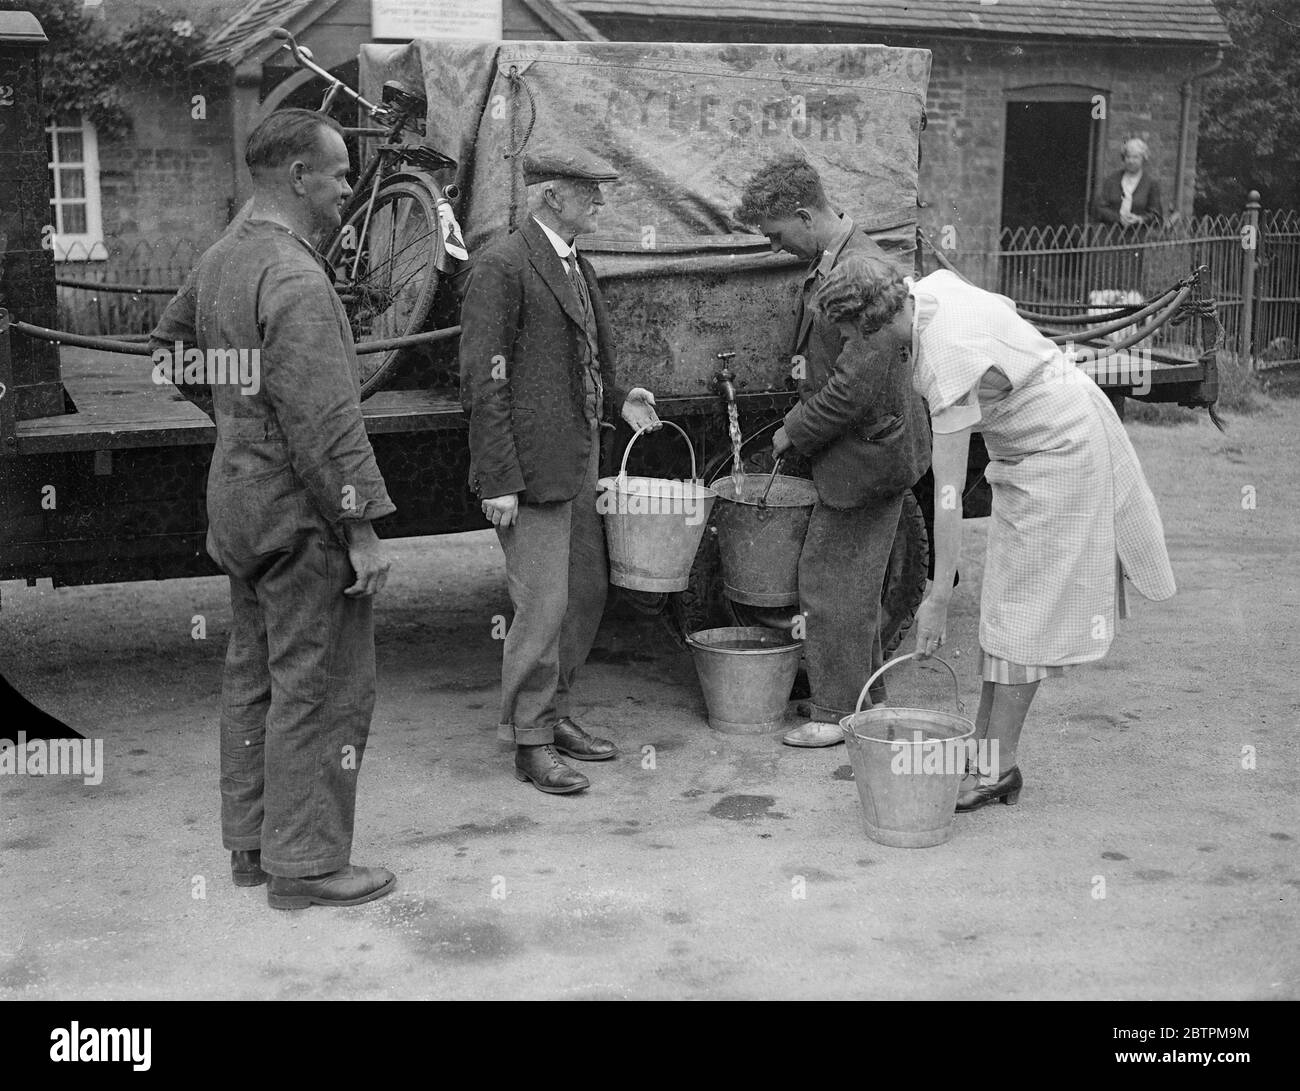 Aumento della siccità nel Buckinghamshire . I villaggi ricevono le forniture di acqua dai lorrys . Foto spettacoli , abitanti di Kingswood , Buckinghamshire , che ricevono le loro forniture d'acqua da un carro armato . 9 agosto 1935 Foto Stock